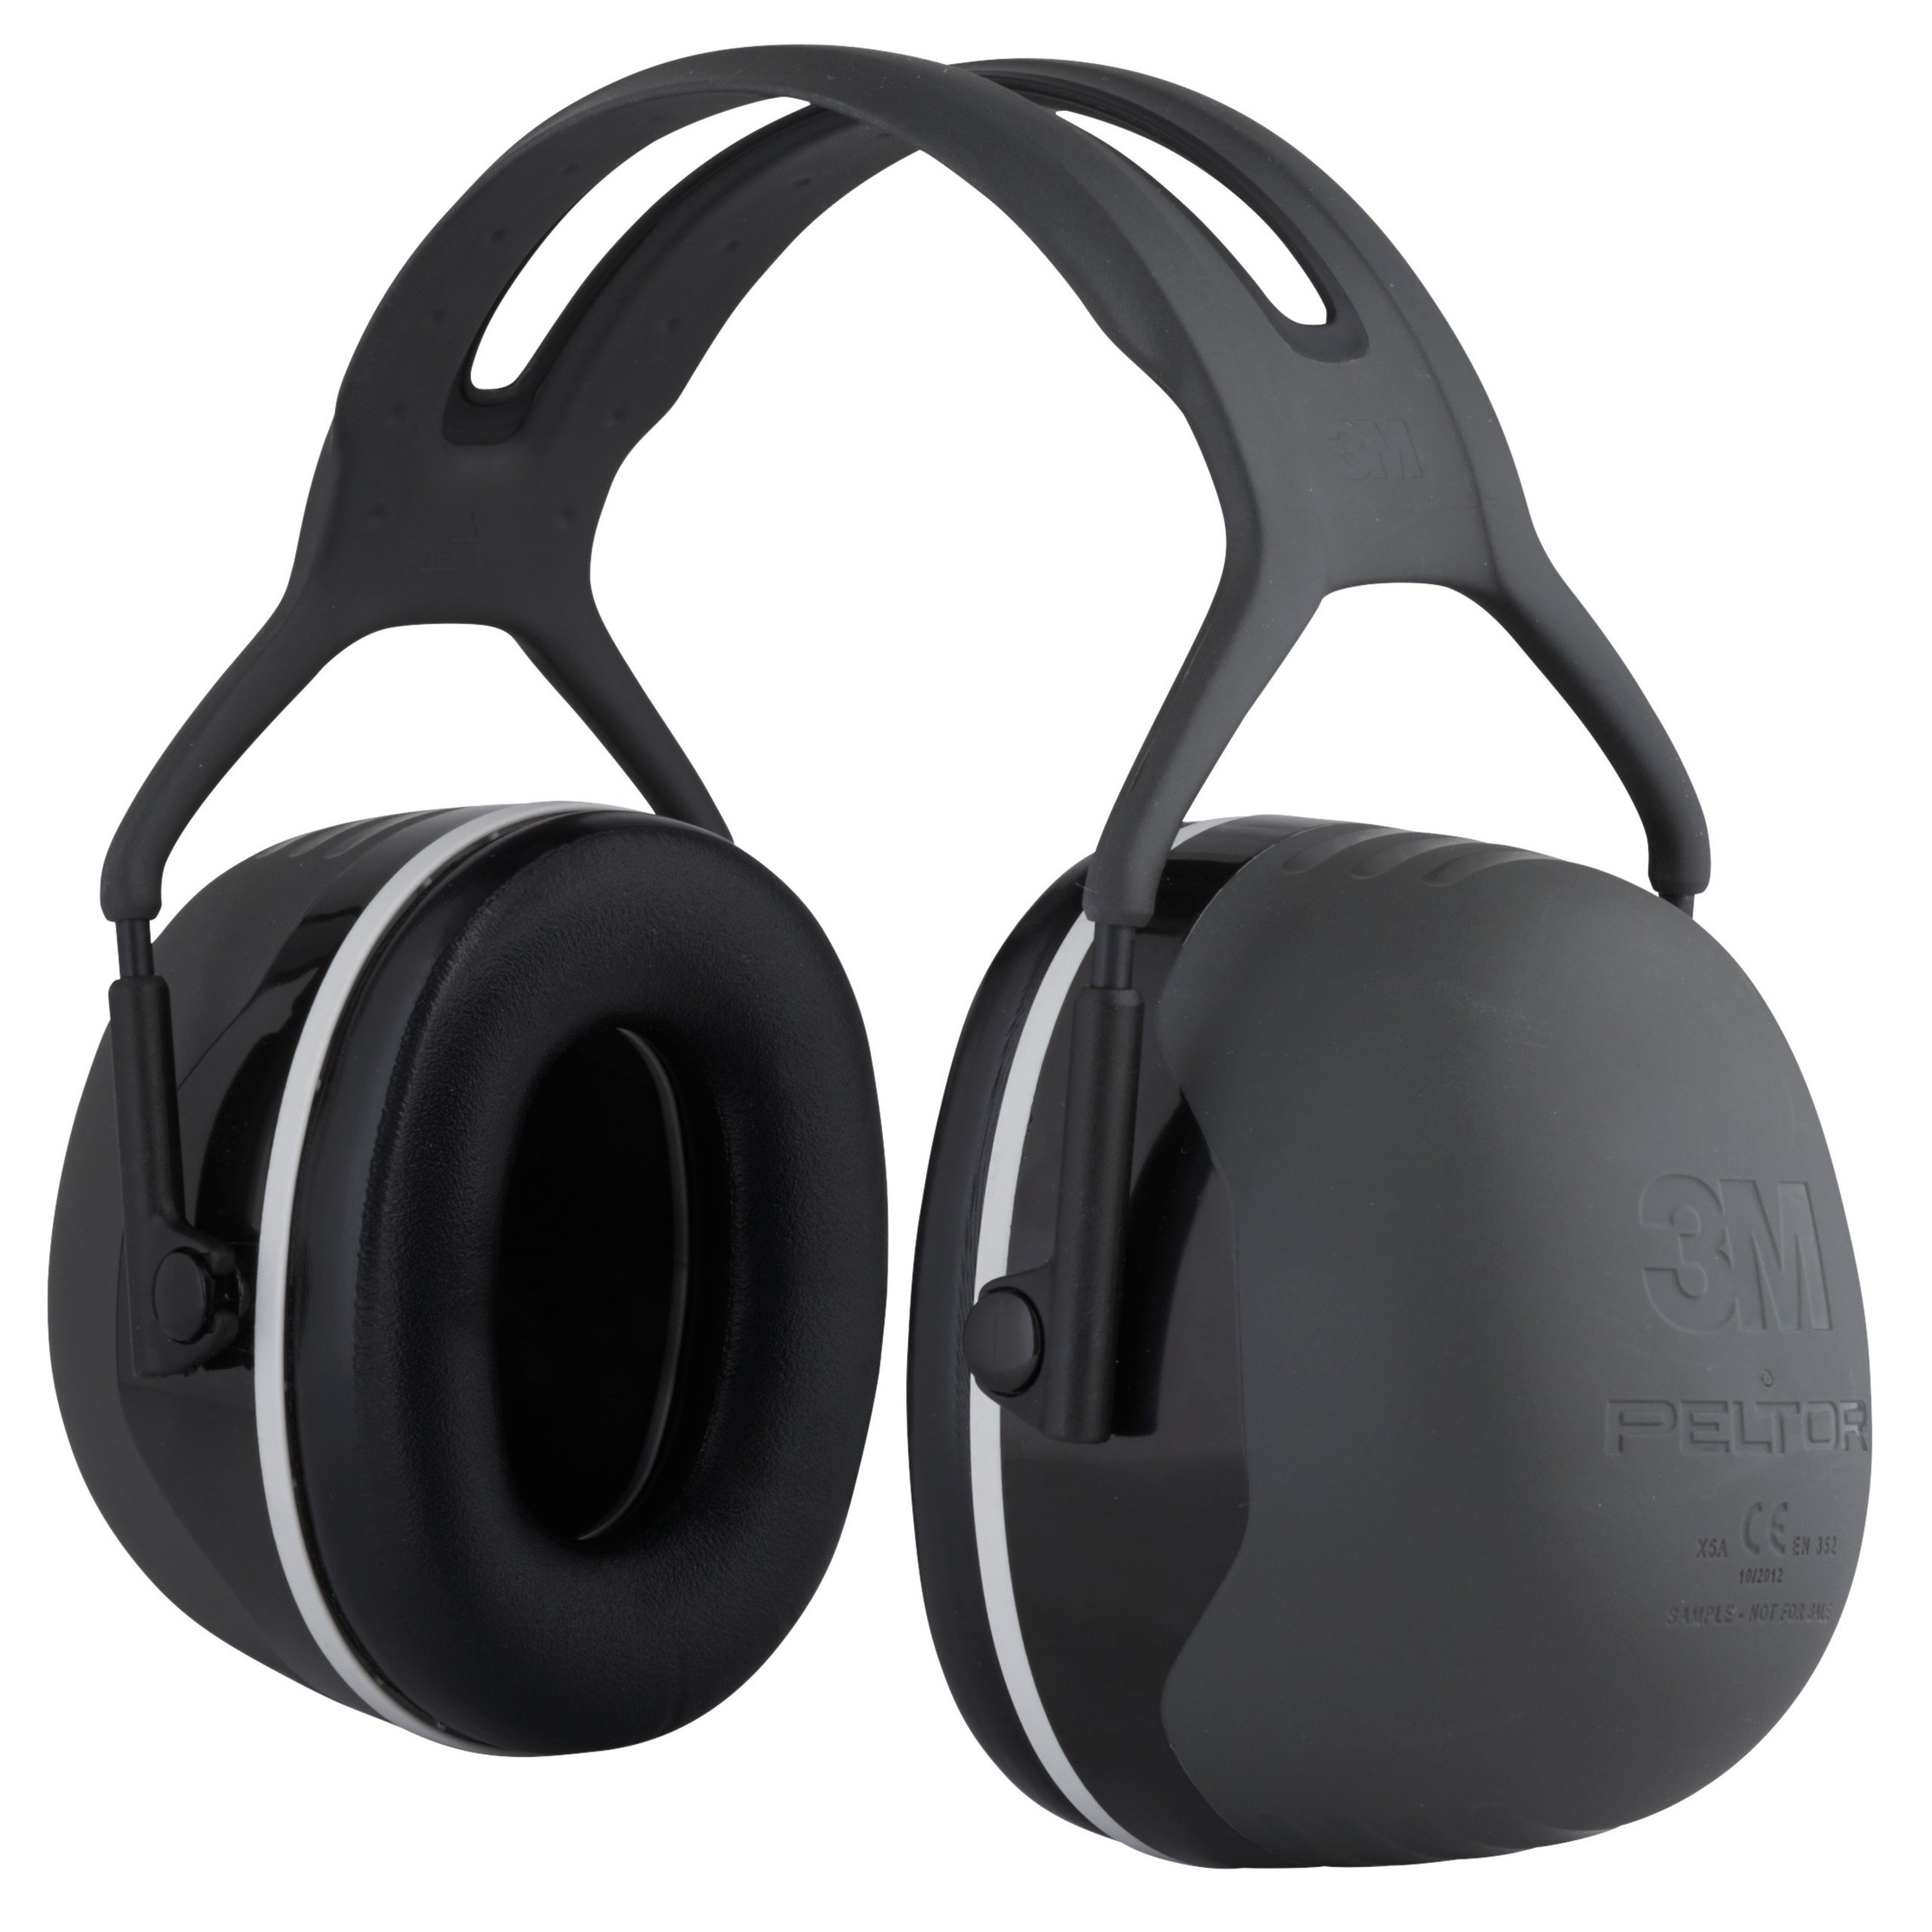 Peltor Gehörschutz X5A mit Kopfbügel